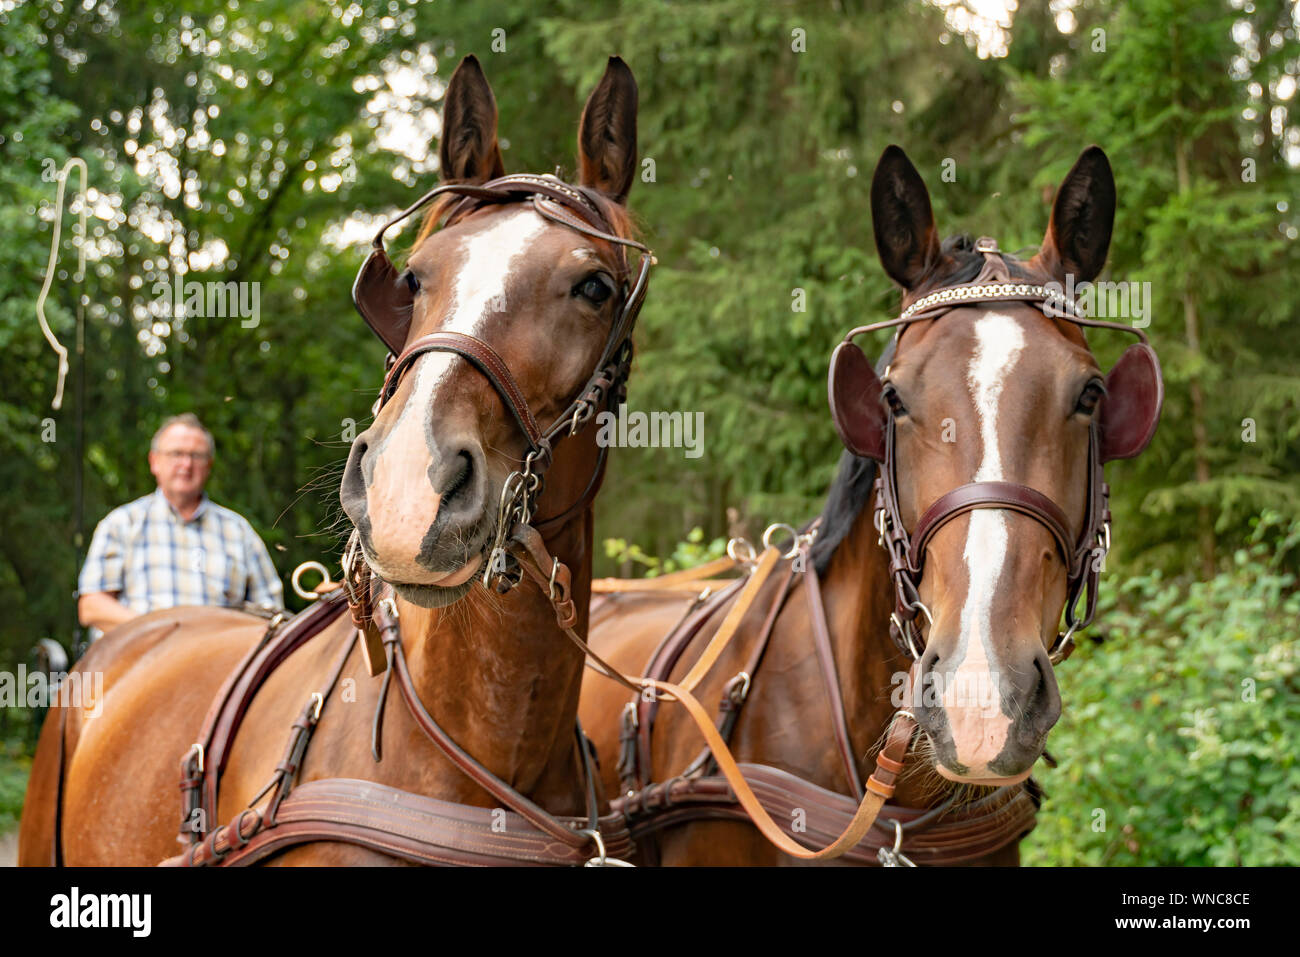 Un homme de 60 ans conduit un chariot avec deux chevaux lourds de Thuringe saxonne (sang chaud). Il vient de la forêt. Banque D'Images